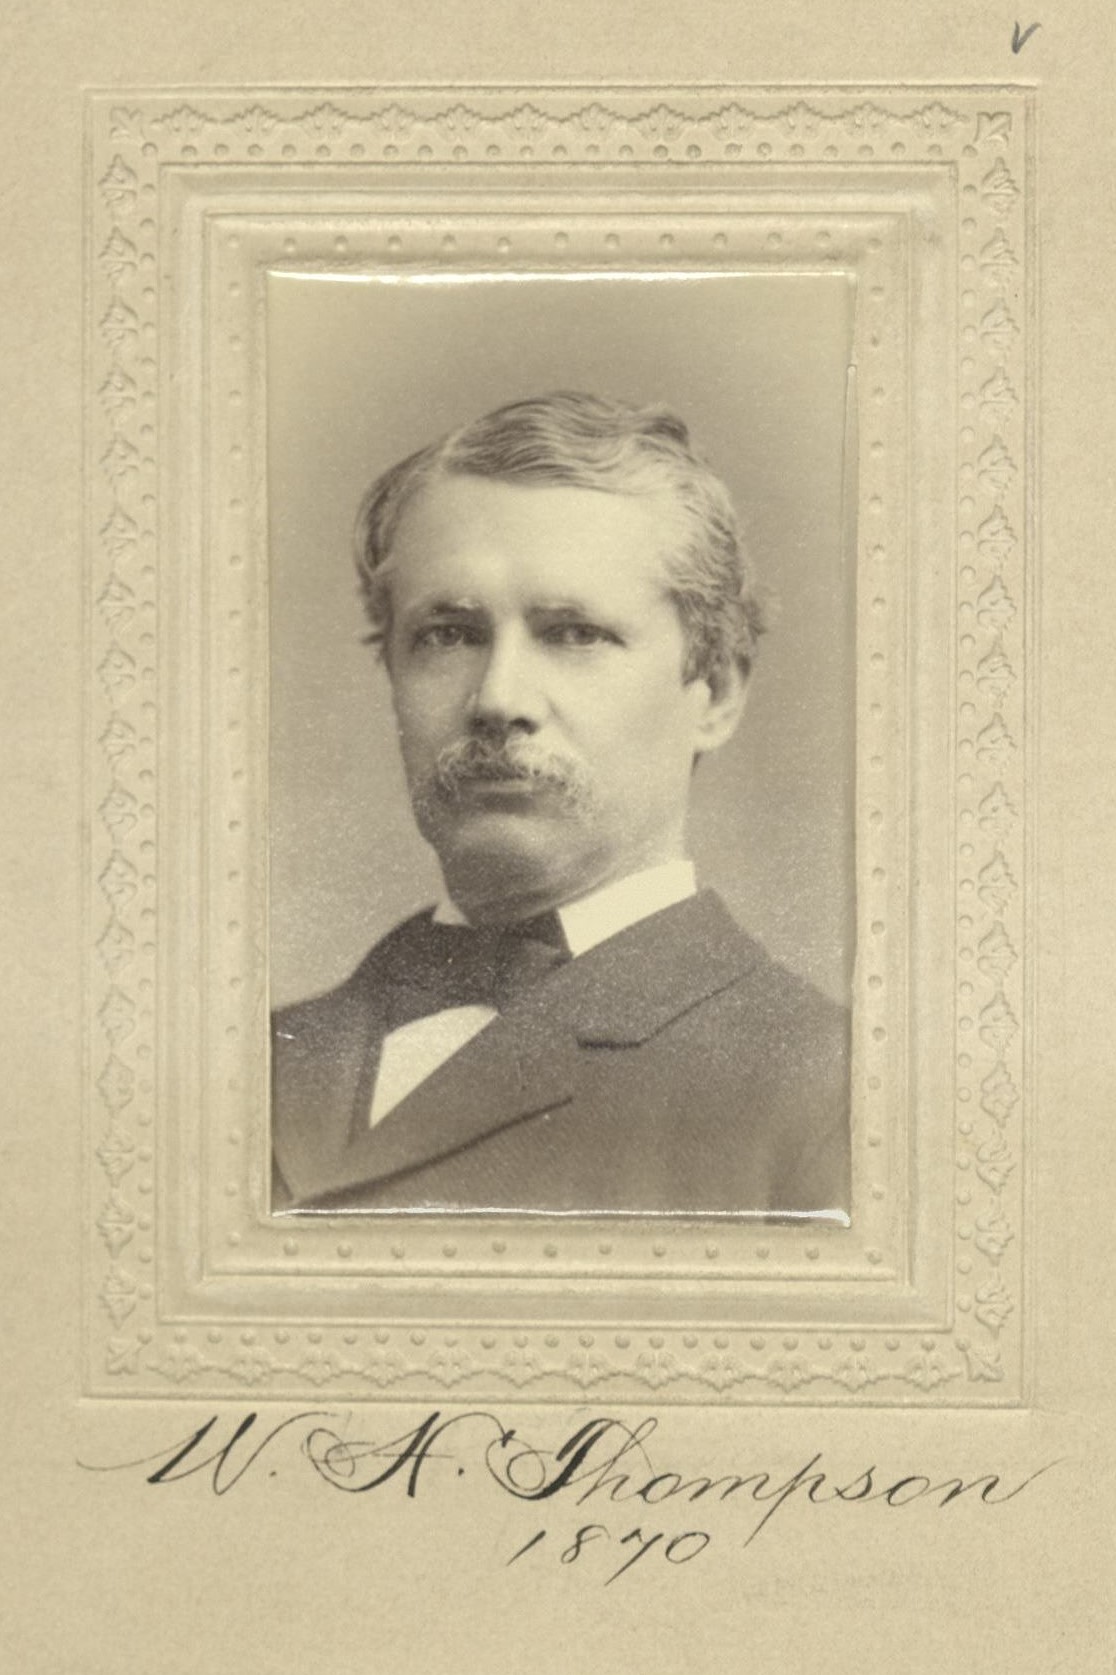 Member portrait of William H. Thomson